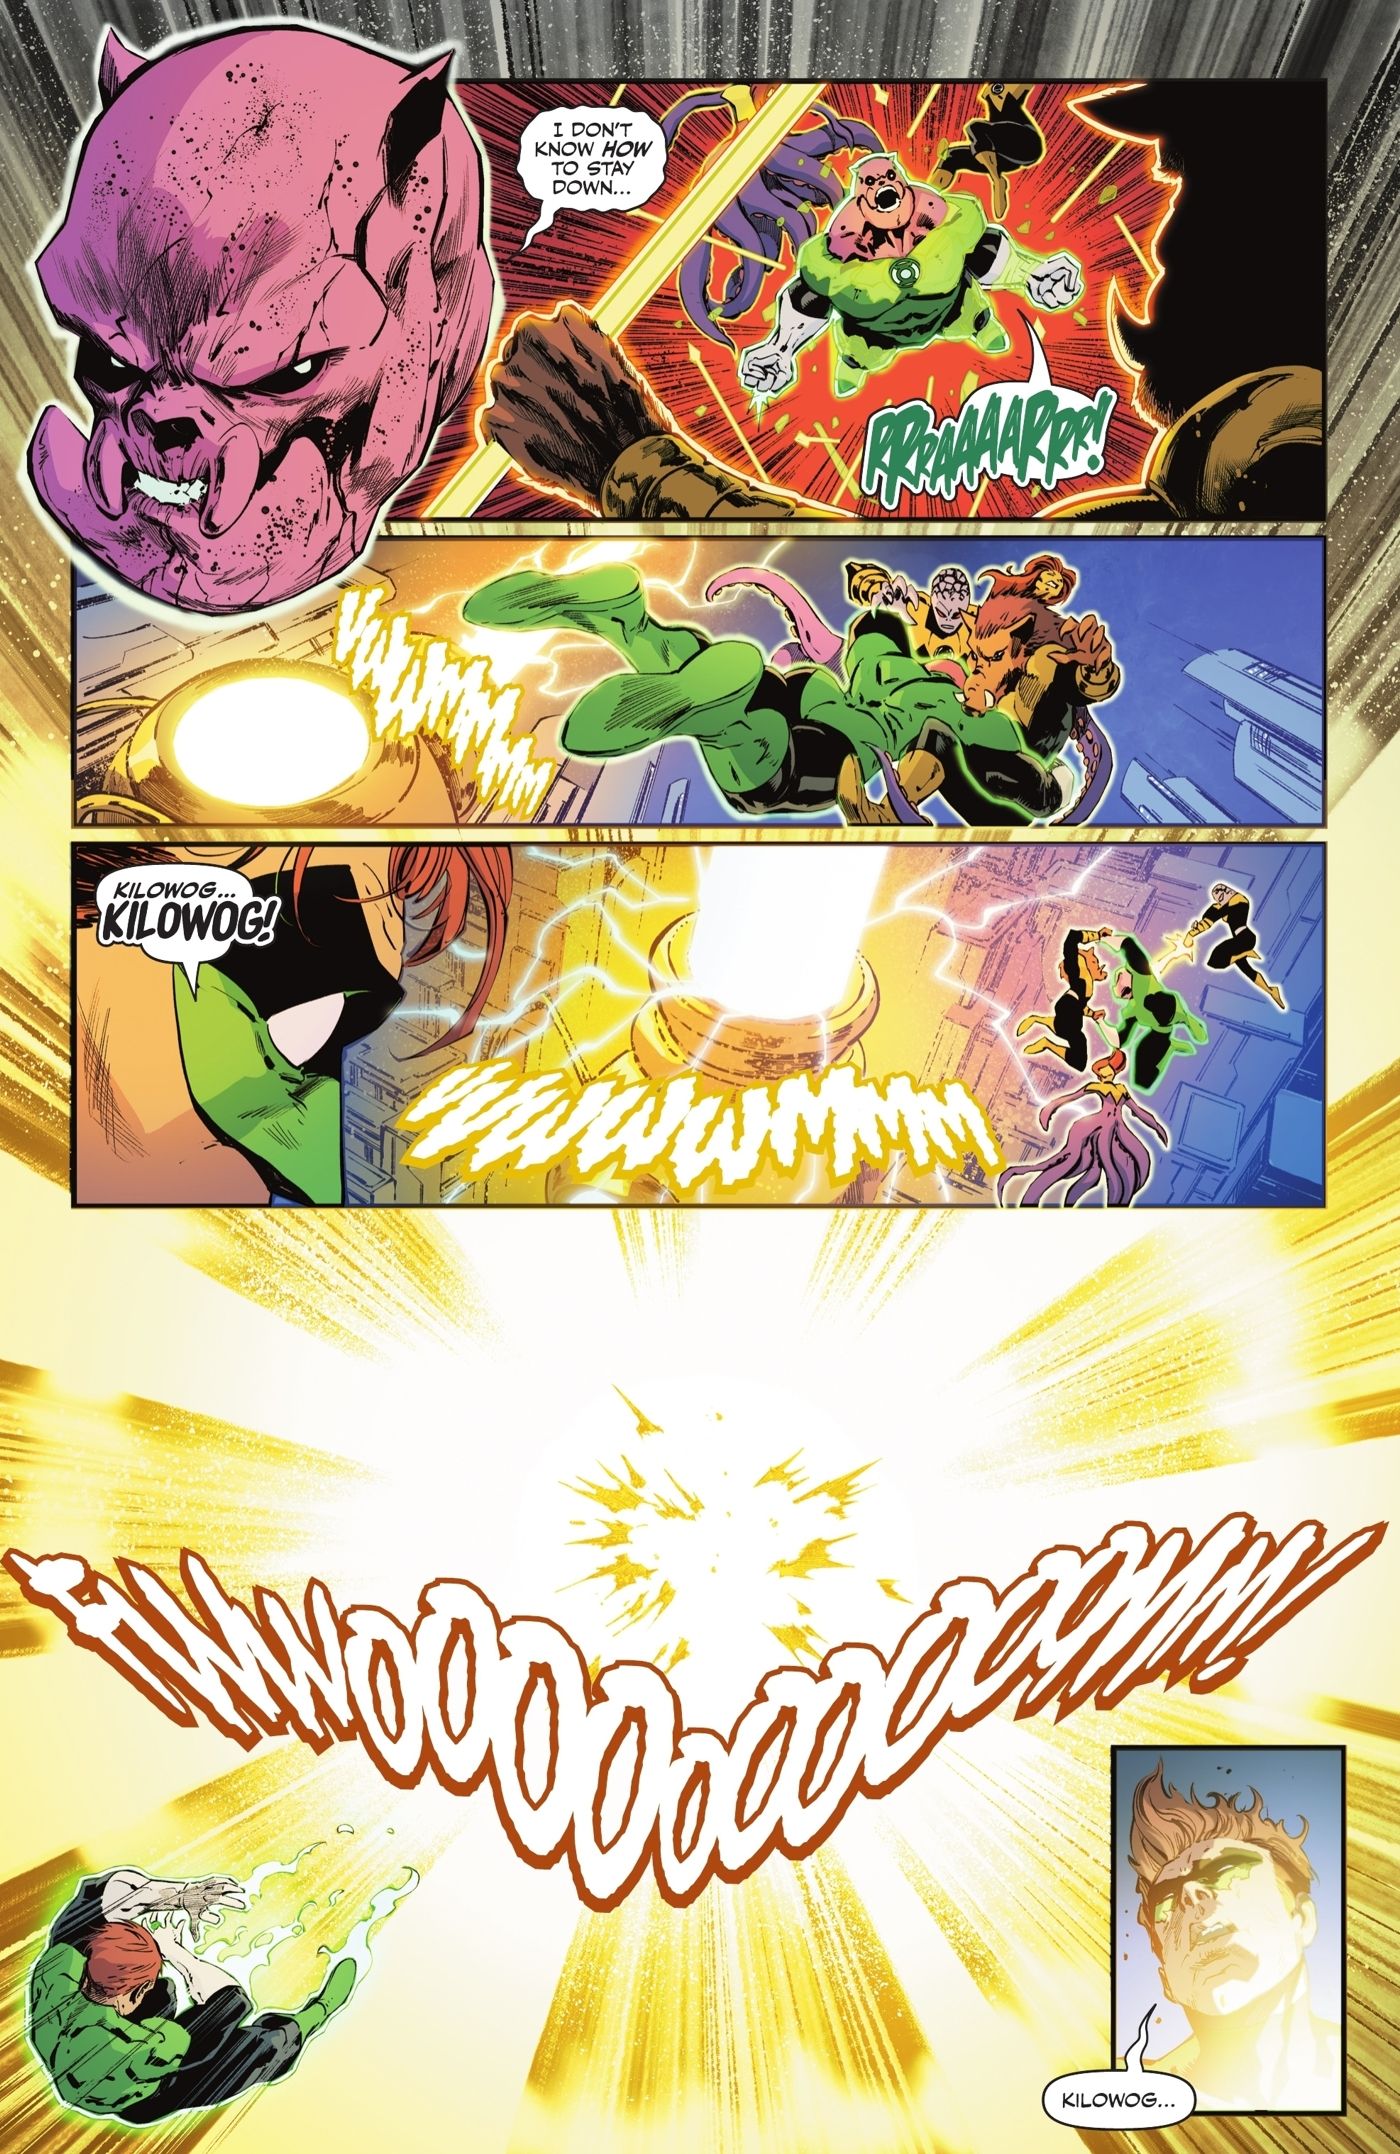 Kilowog Dies in an Explosion DC